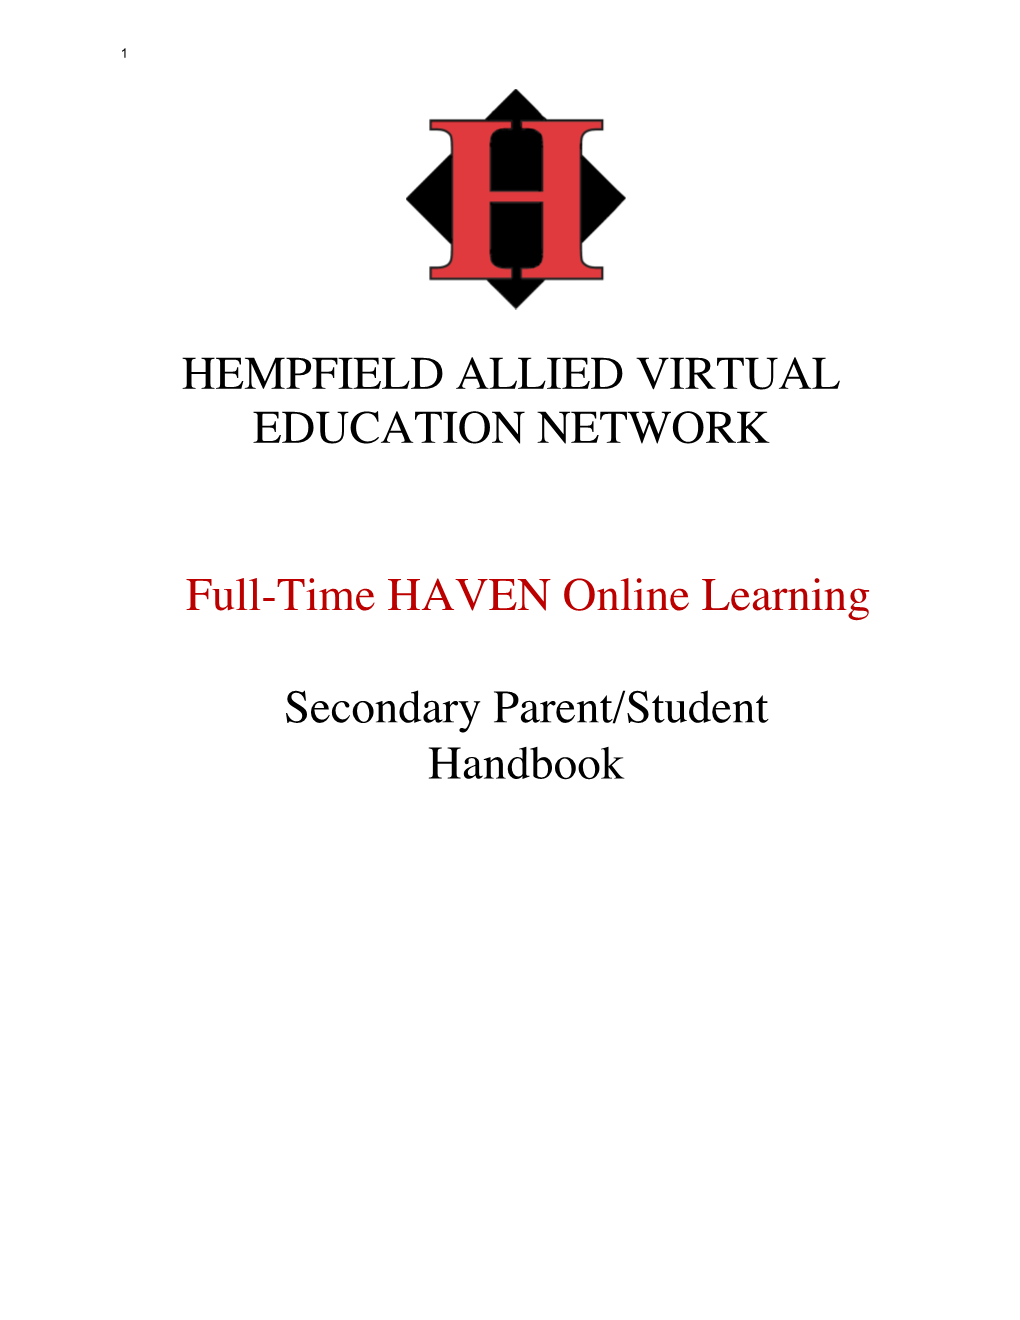 HAVEN Handbook